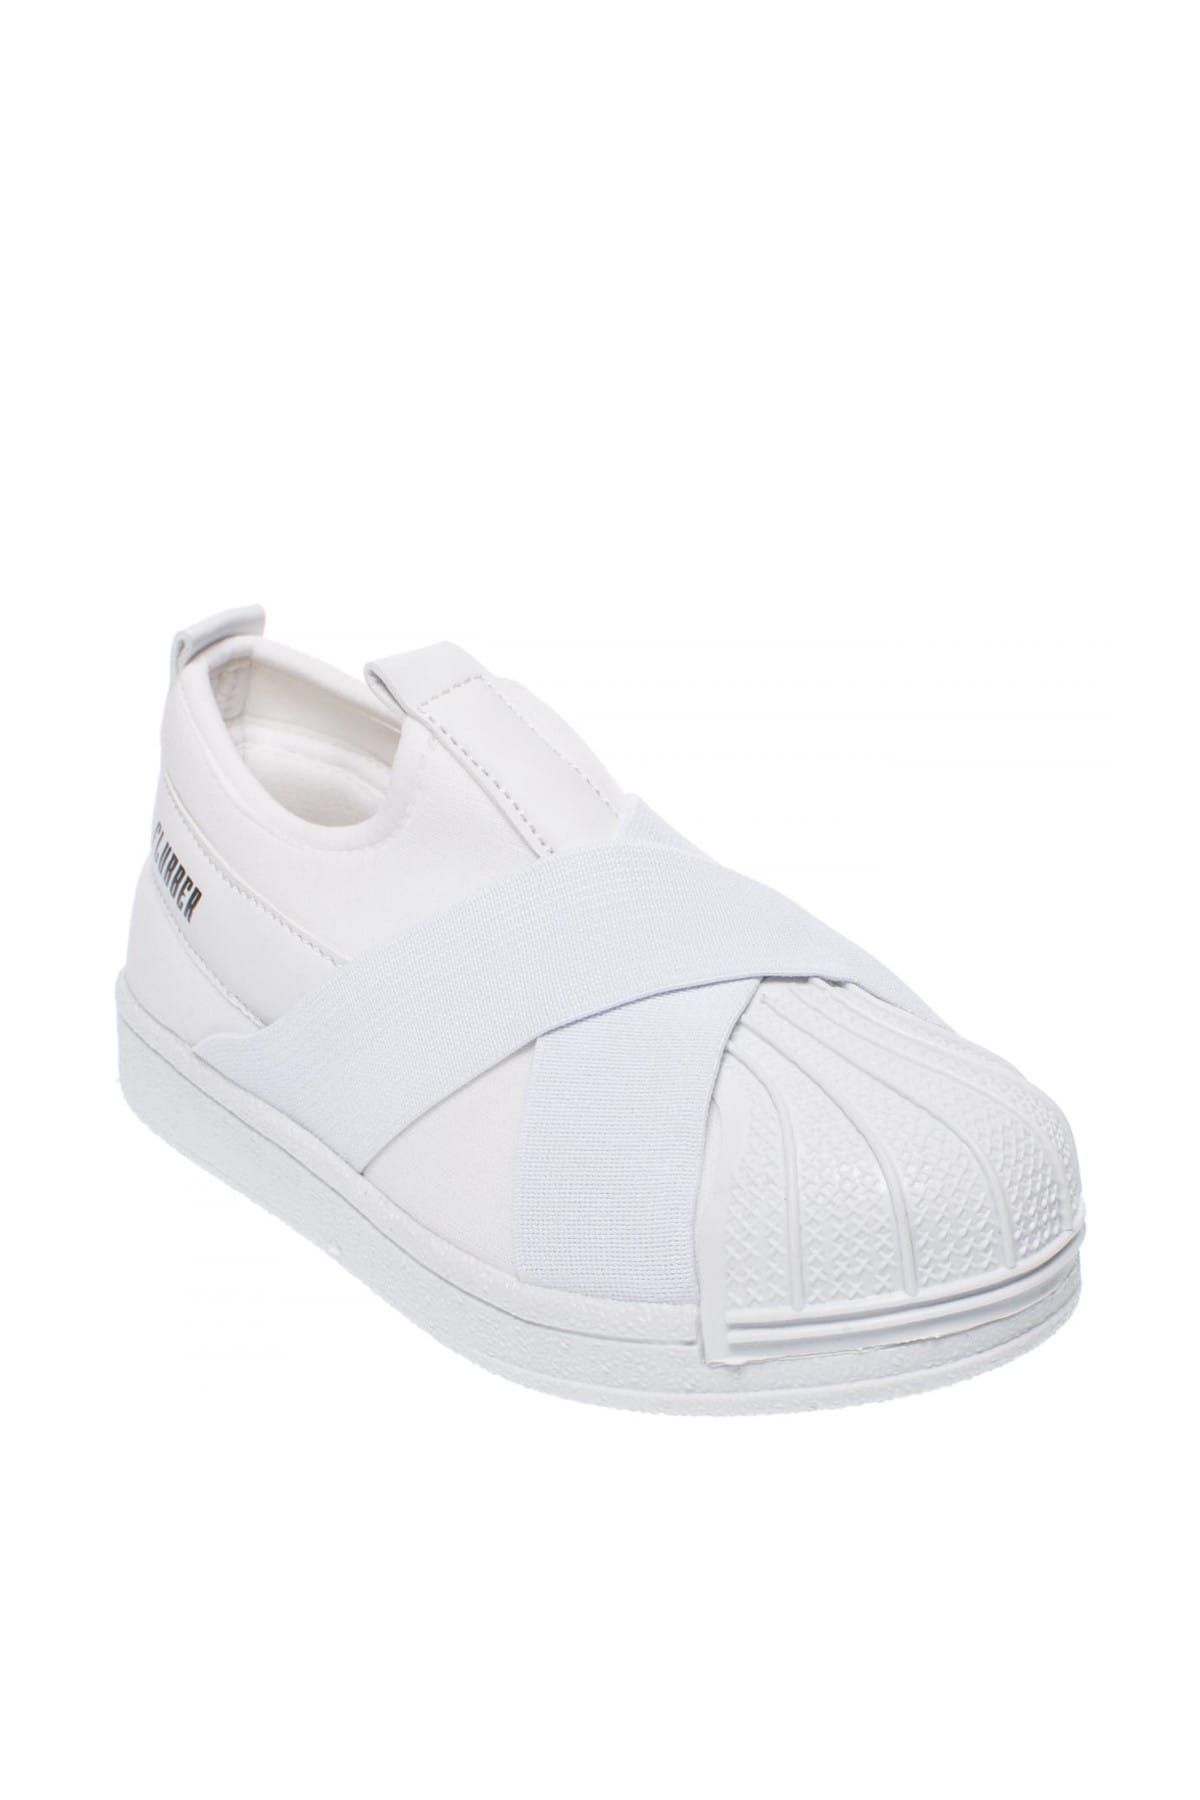 Flubber Beyaz Unisex Çocuk Ayakkabı 336 24271P